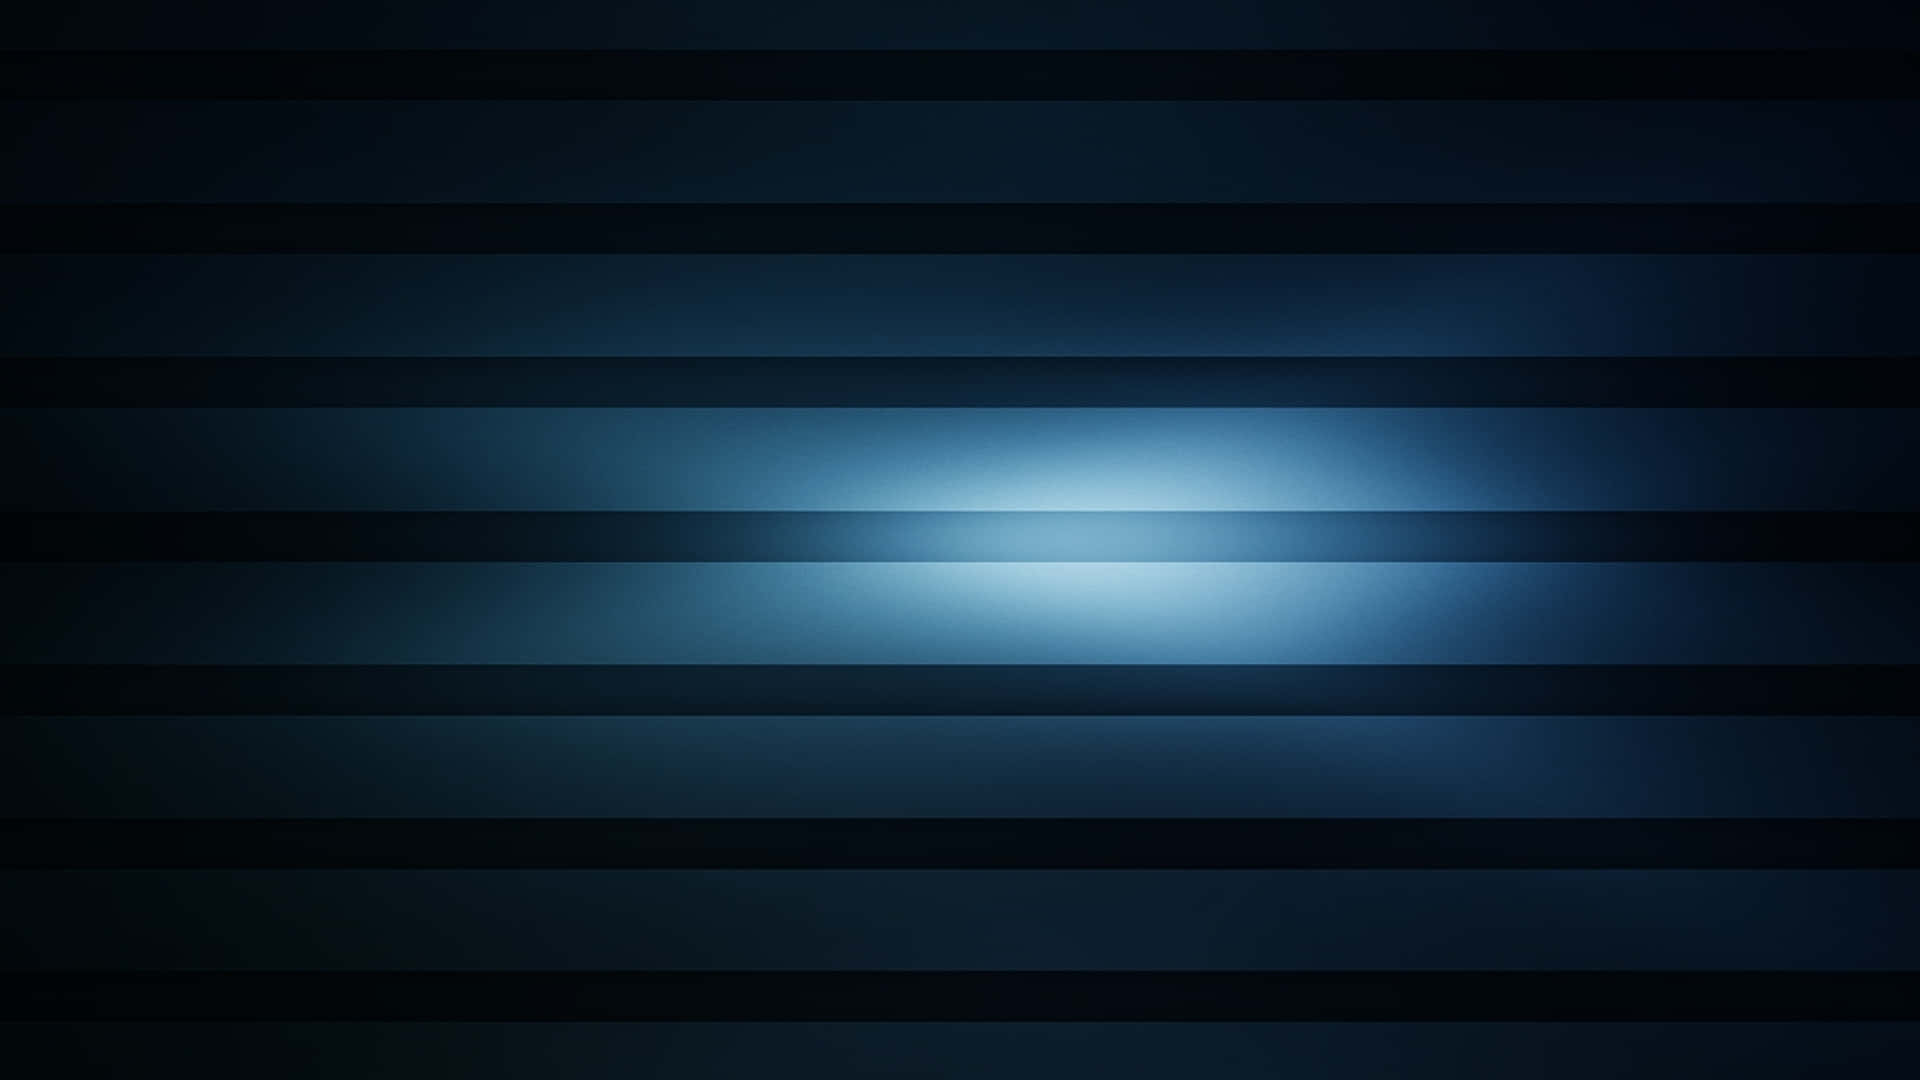 Imágende Líneas Horizontales De Color Azul Oscuro.